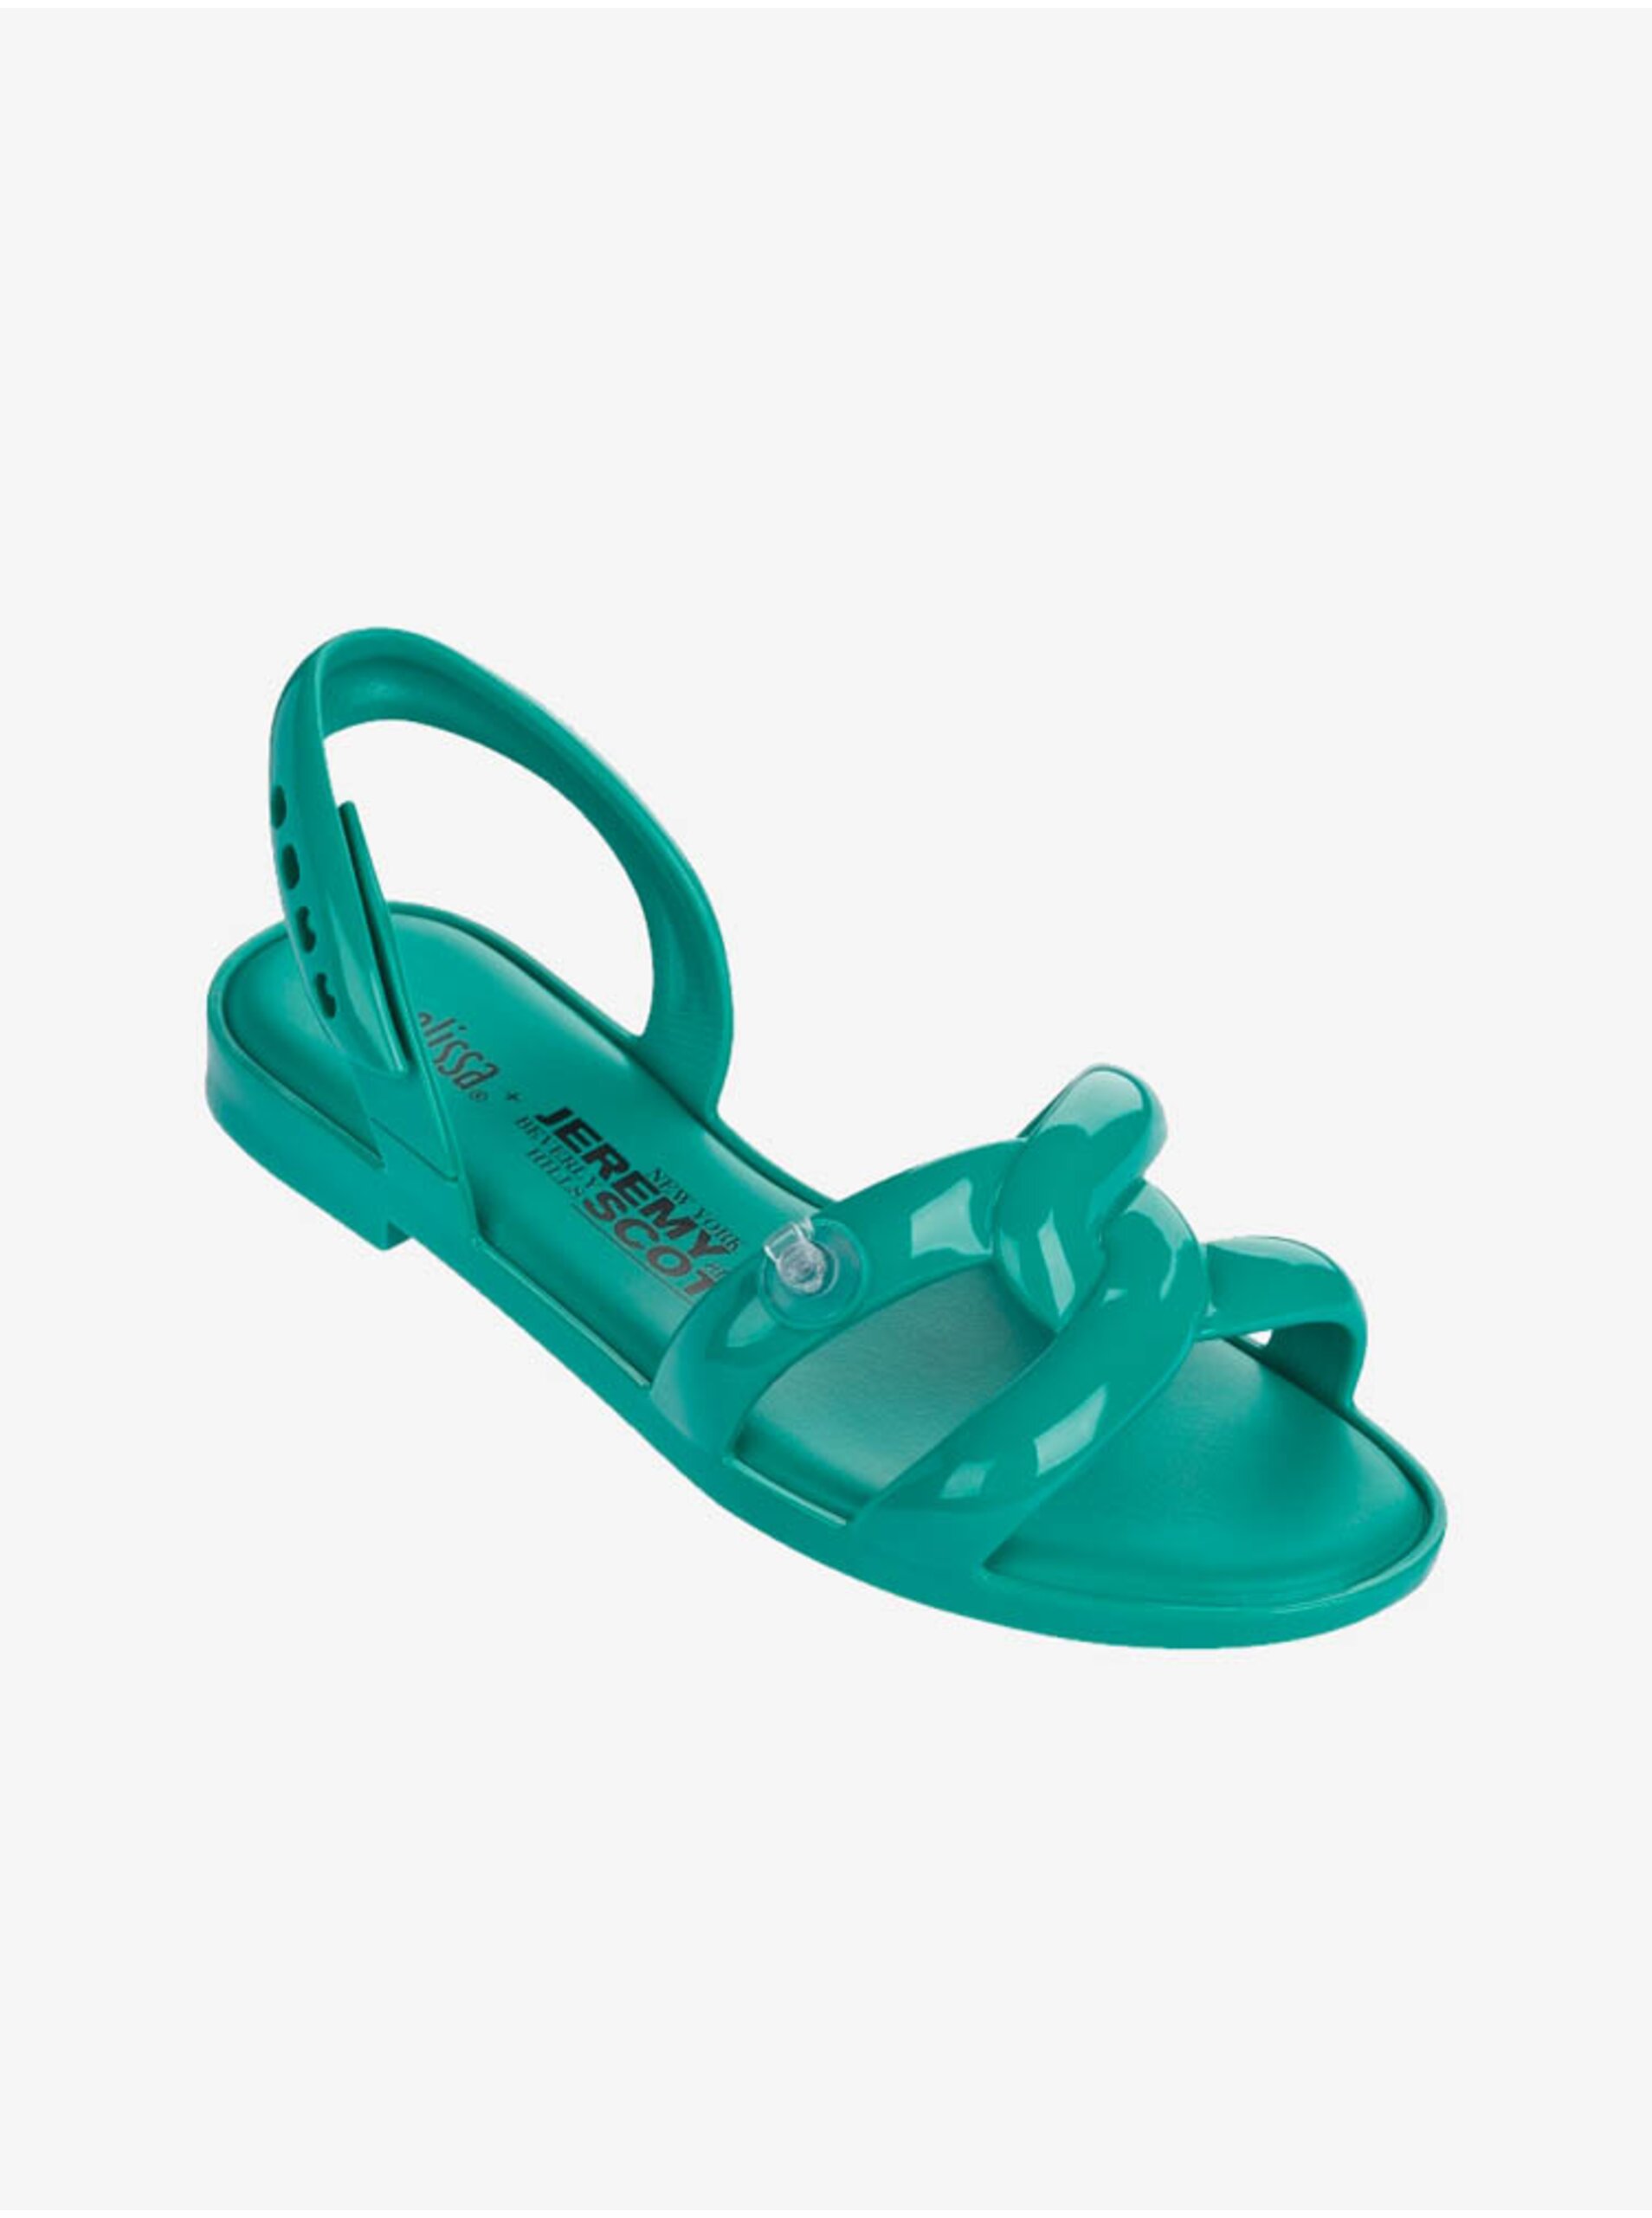 Lacno Zelené dámske sandálky Melissa Tube Sandal + Jeremy Scott